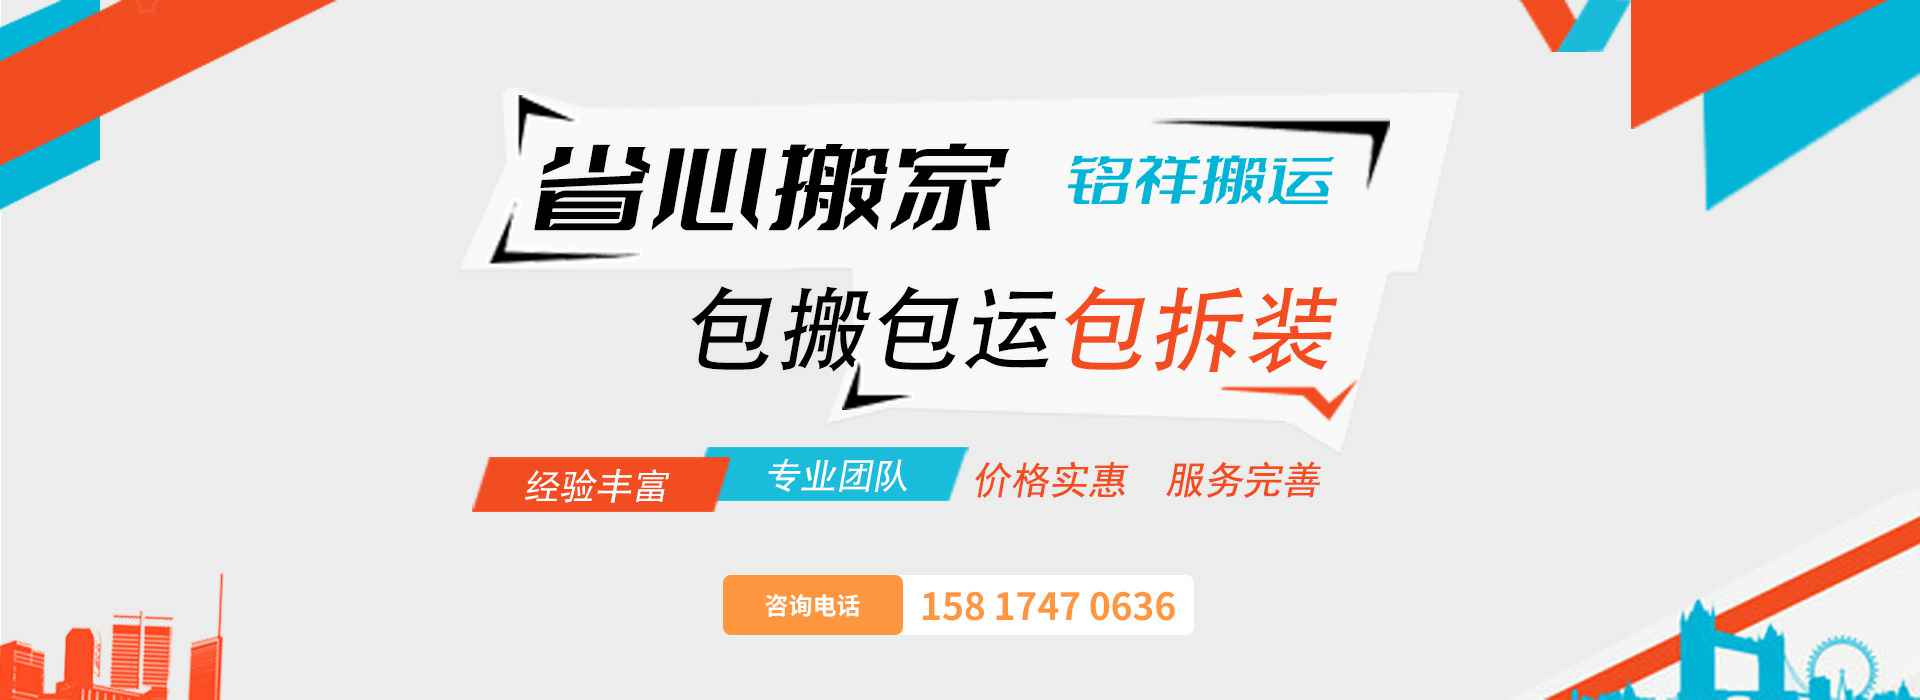 皇冠app官网(中国)科技有限公司包搬包运包拆装